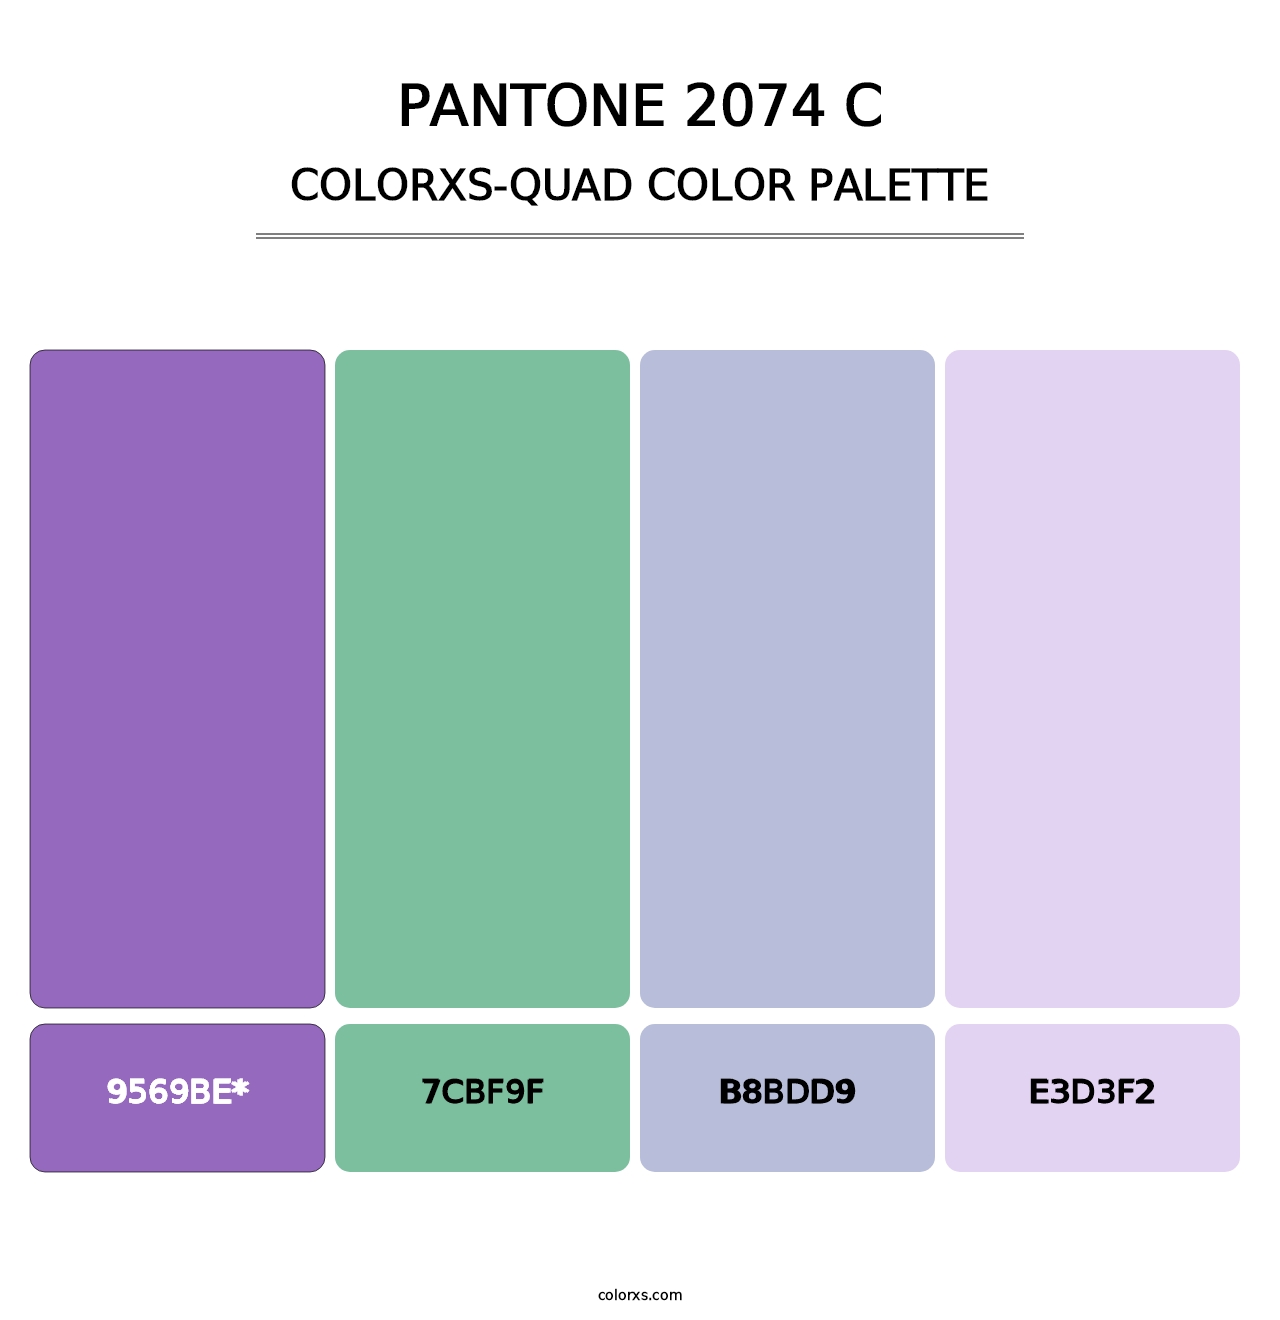 PANTONE 2074 C - Colorxs Quad Palette